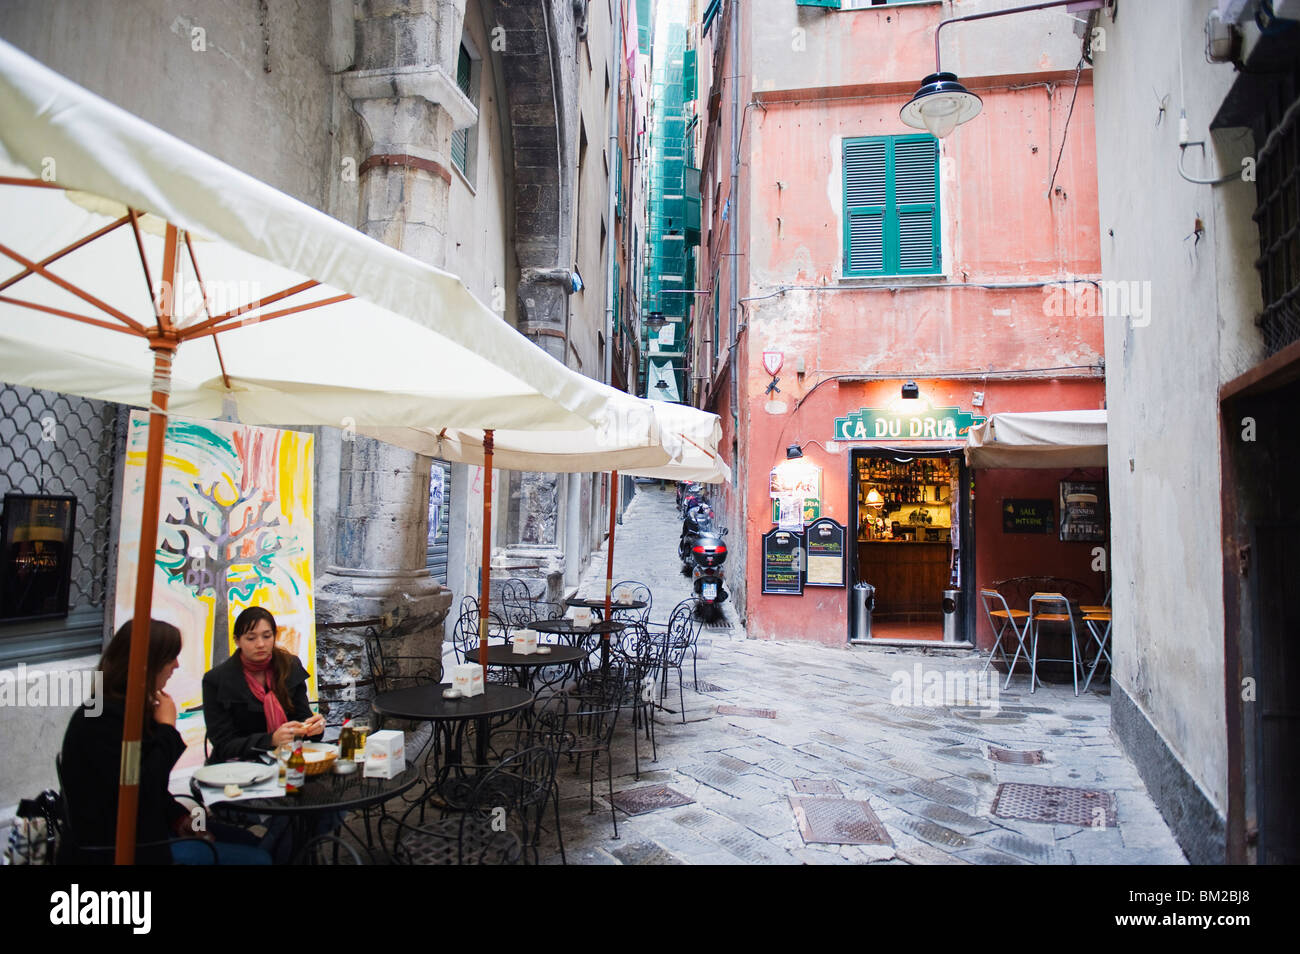 Cafe and bar in side street, Genoa (Genova), Liguria, Italy Stock Photo